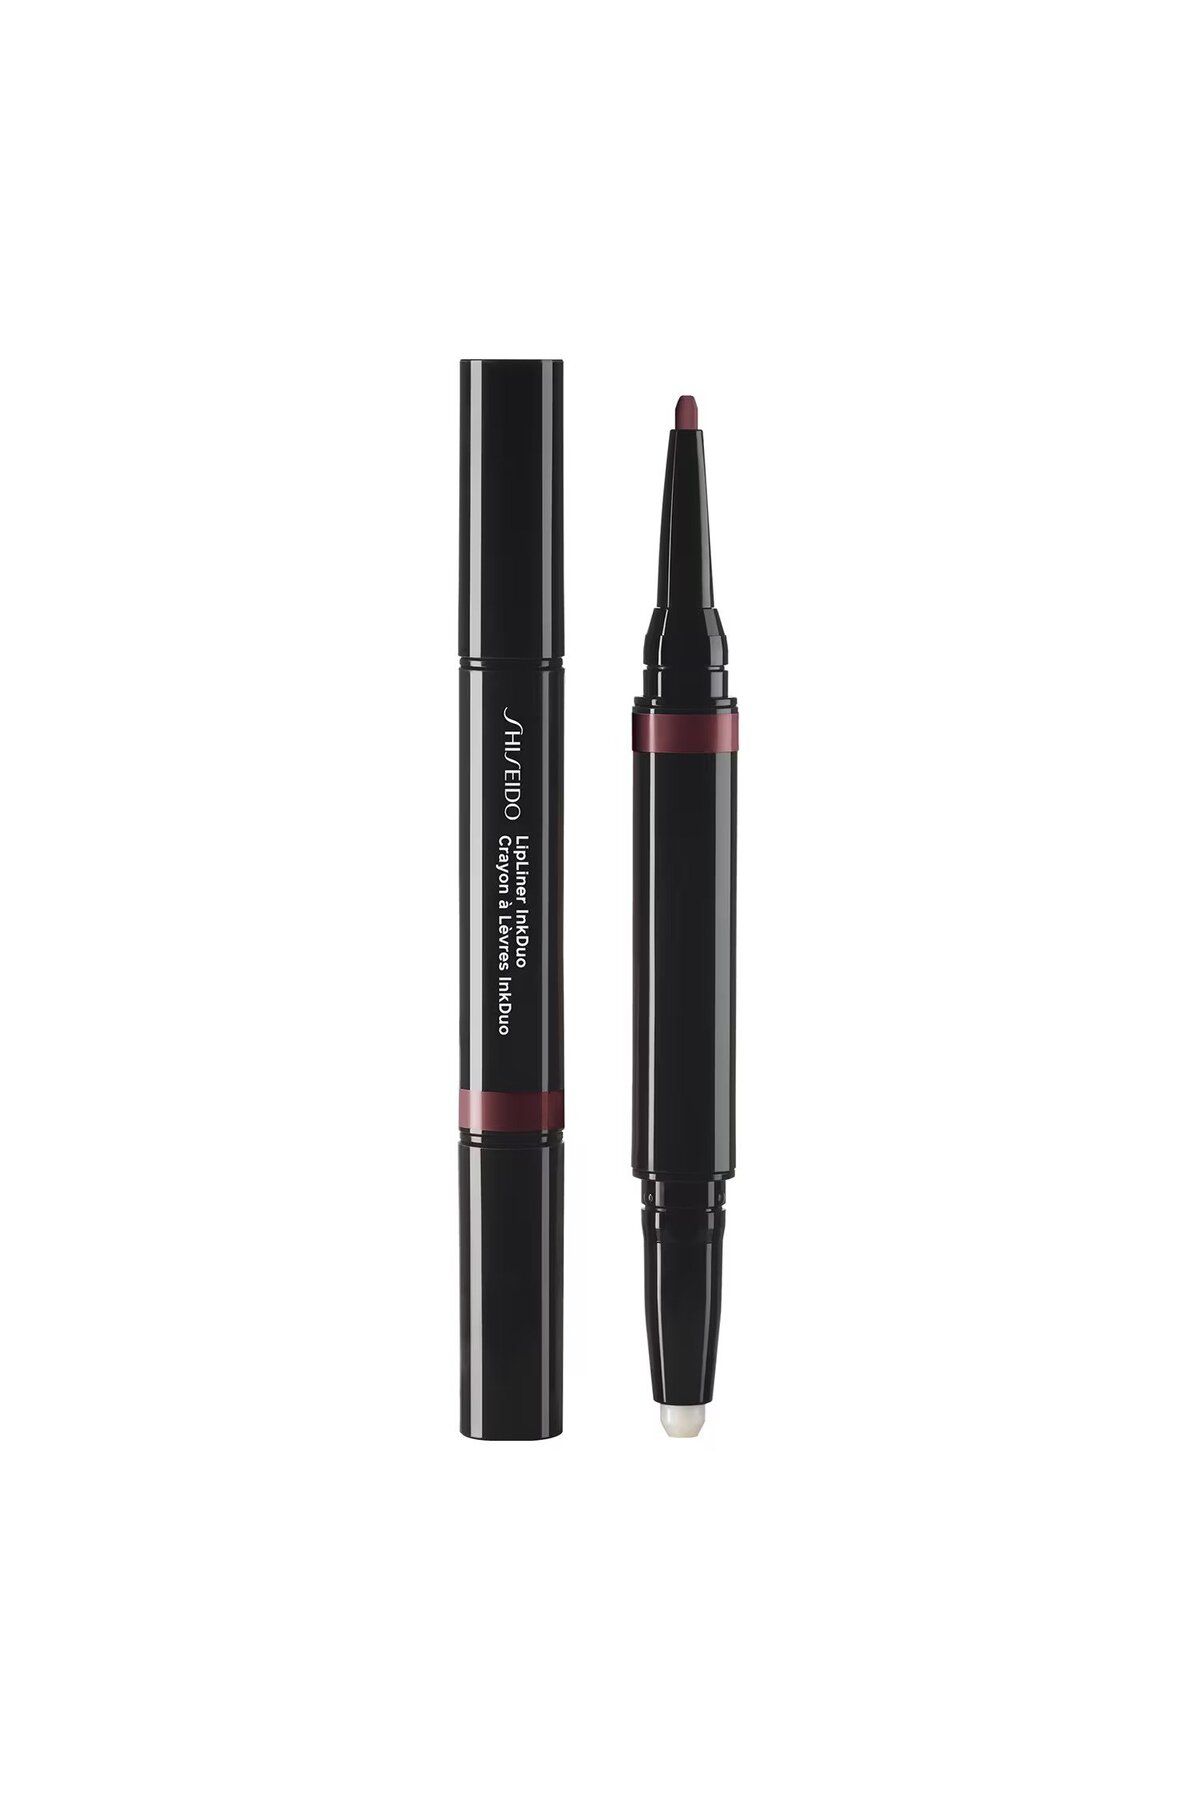 Shiseido LipLiner Ink Duo - 2'si Bir Arada Çift Uçlu Dudak Bazı Ve Kontür Kalemi 1,1 gr